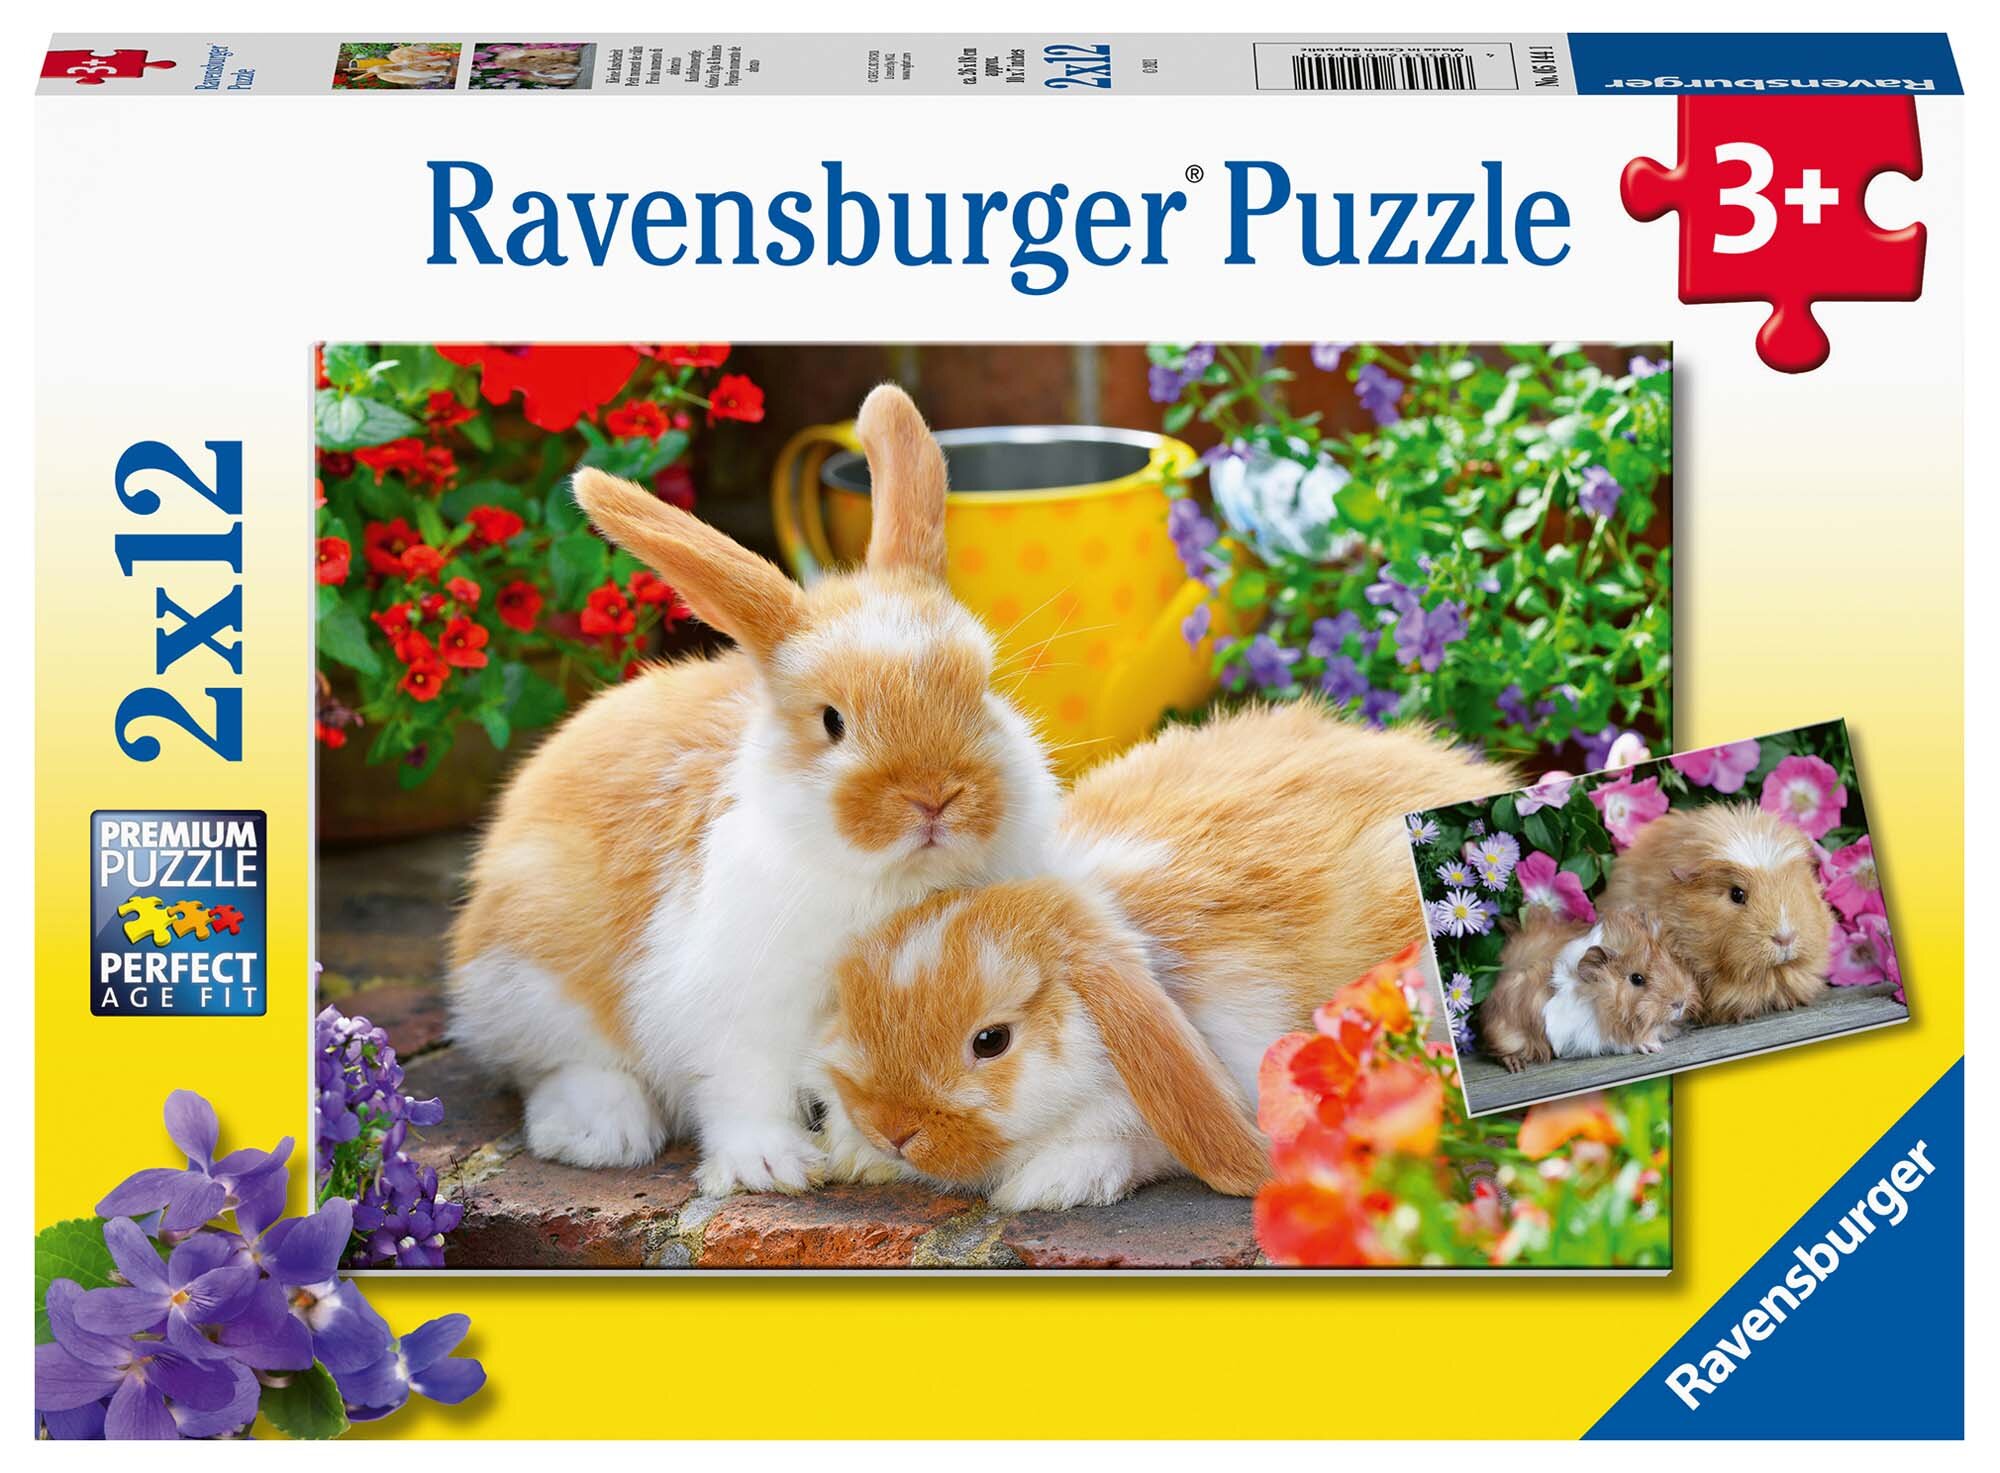 Ravensburger Pussel - Marsvin och kaniner 2x12 bitar